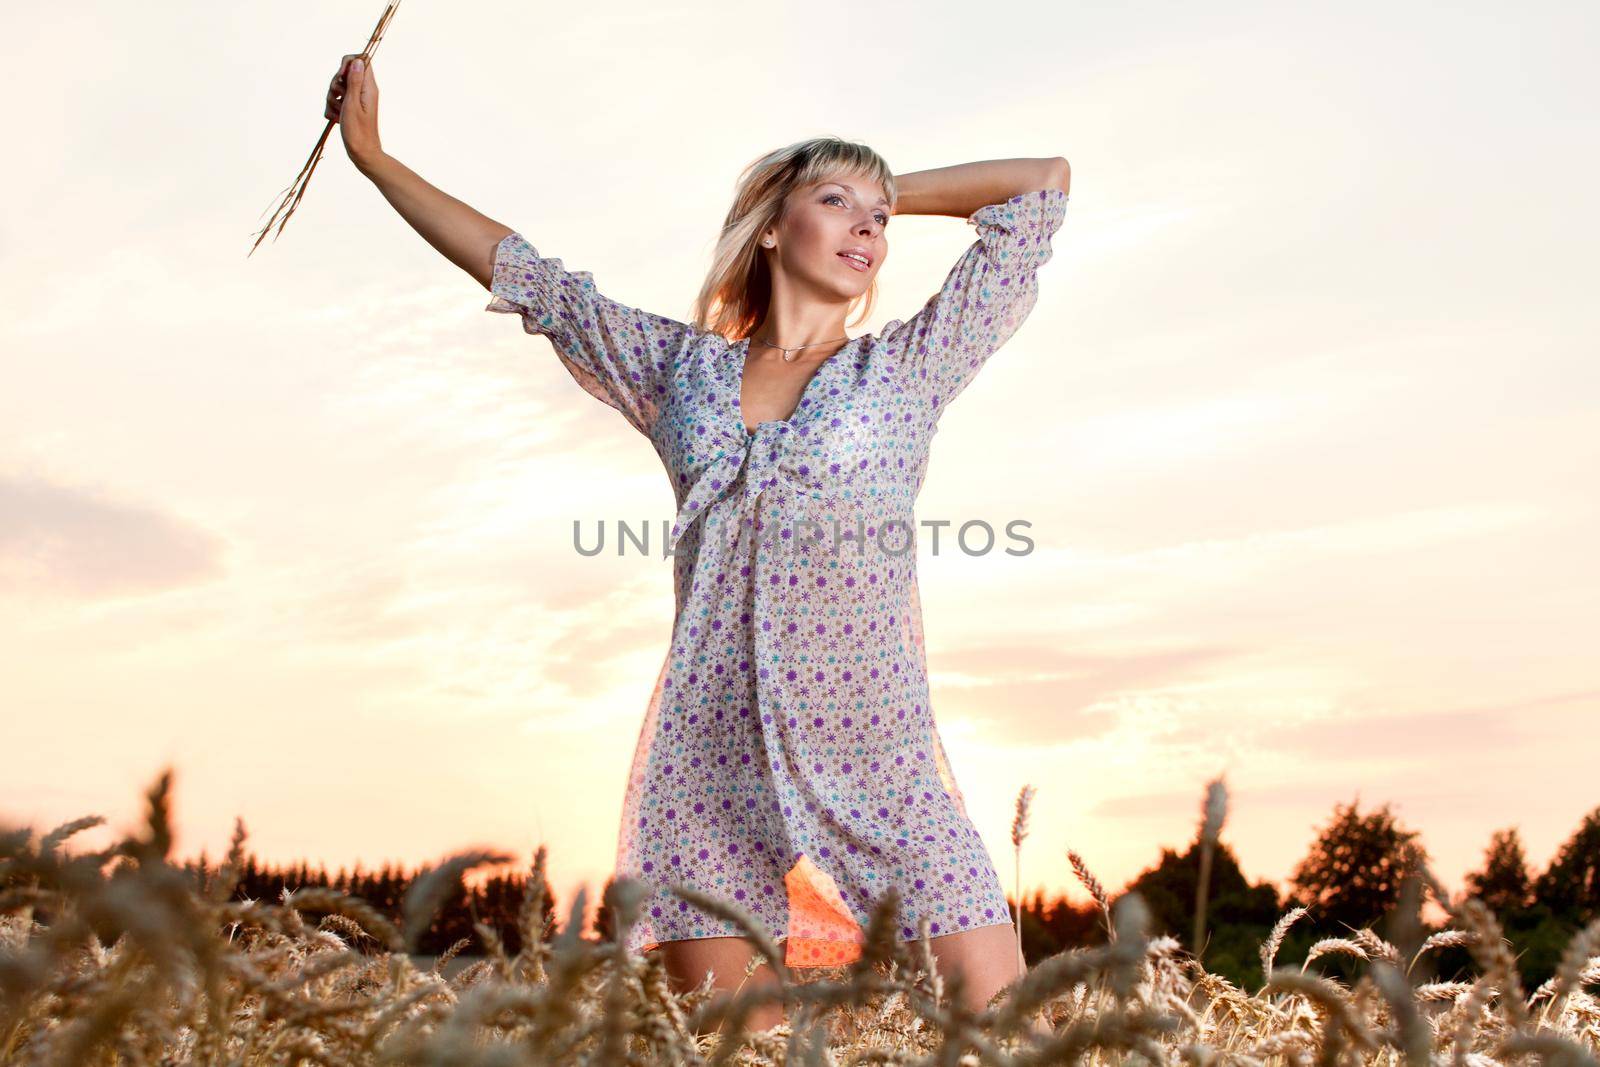 beautiful woman walking on wheat field before sunset